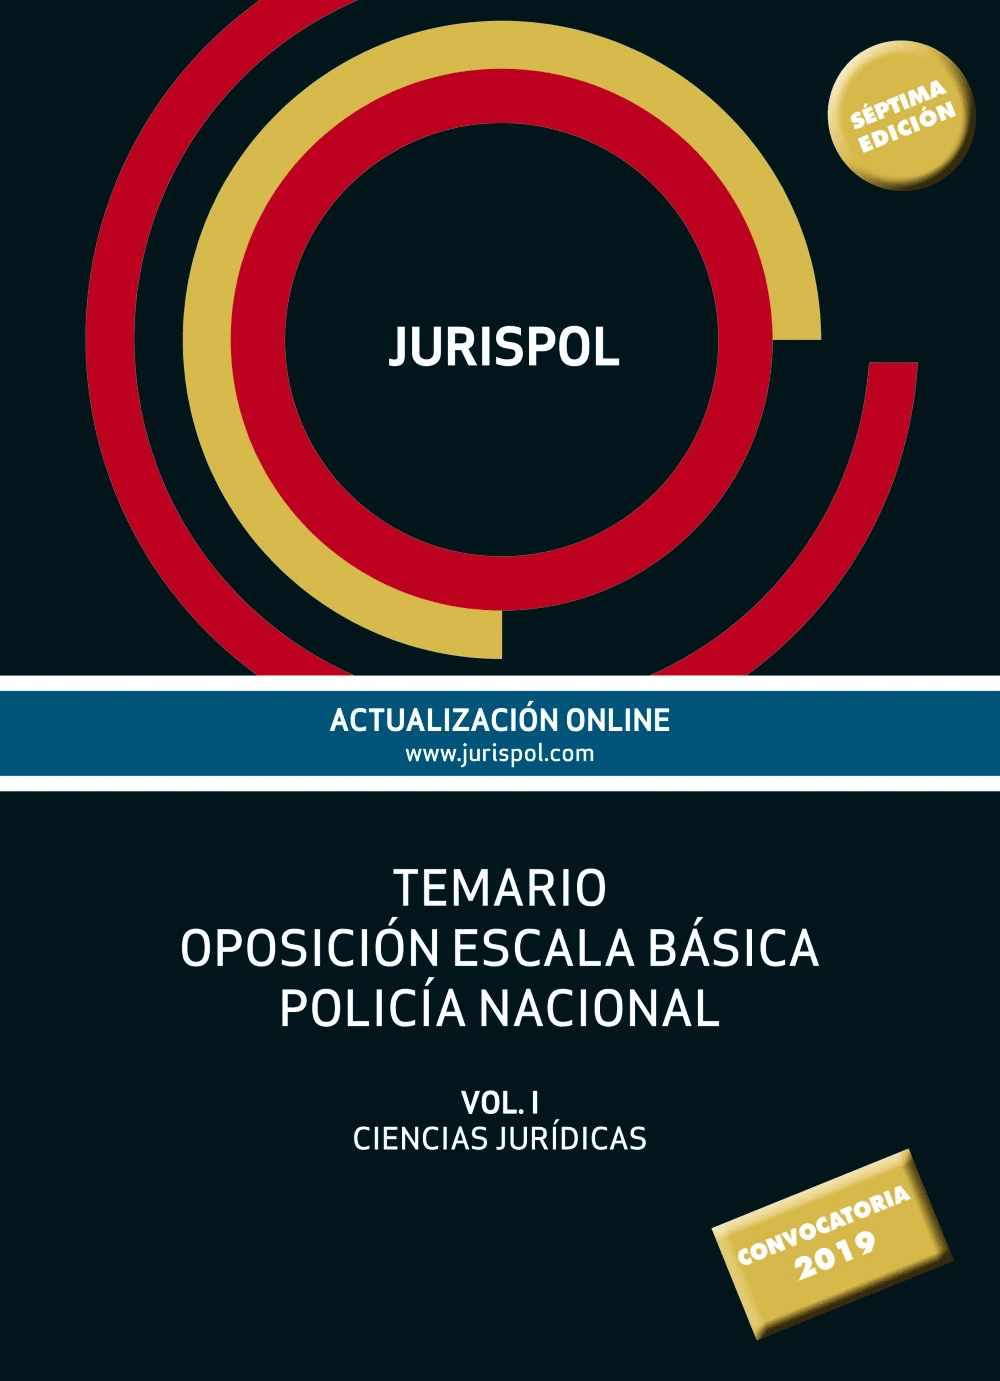 TEMARIO OPOSICIÓN ESCALA BÁSICA POLICÍA NACIONAL VOL. 1